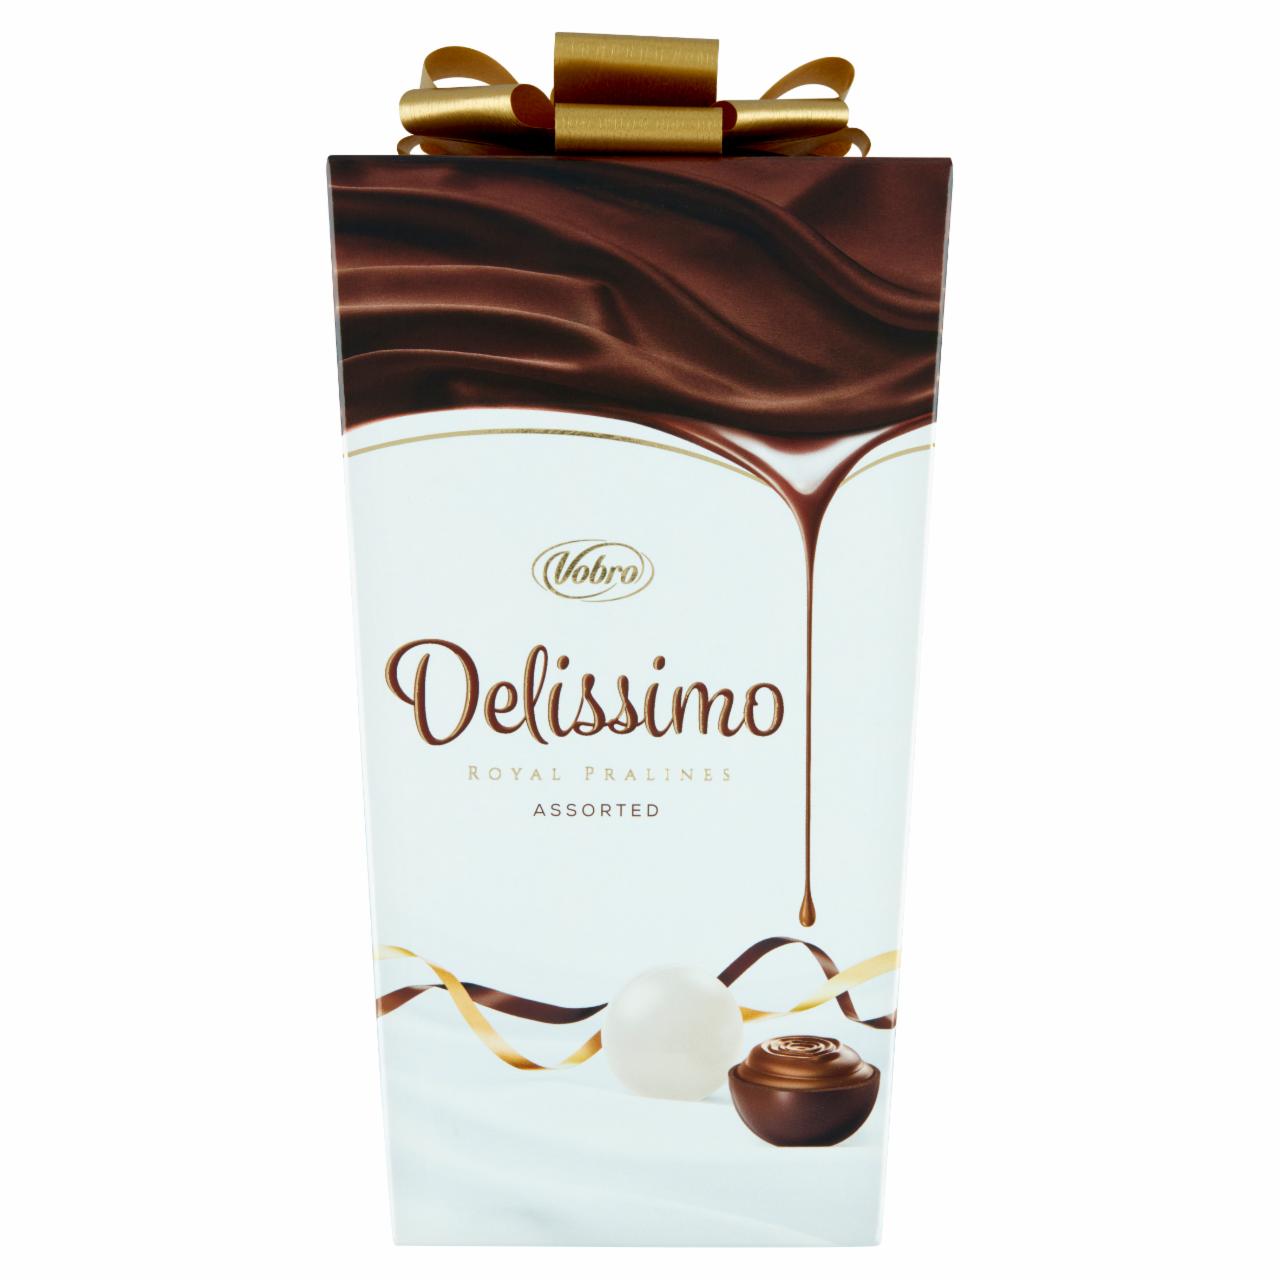 Zdjęcia - Vobro Delissimo Praliny nadziewane kremem mlecznym i kakaowym 208 g